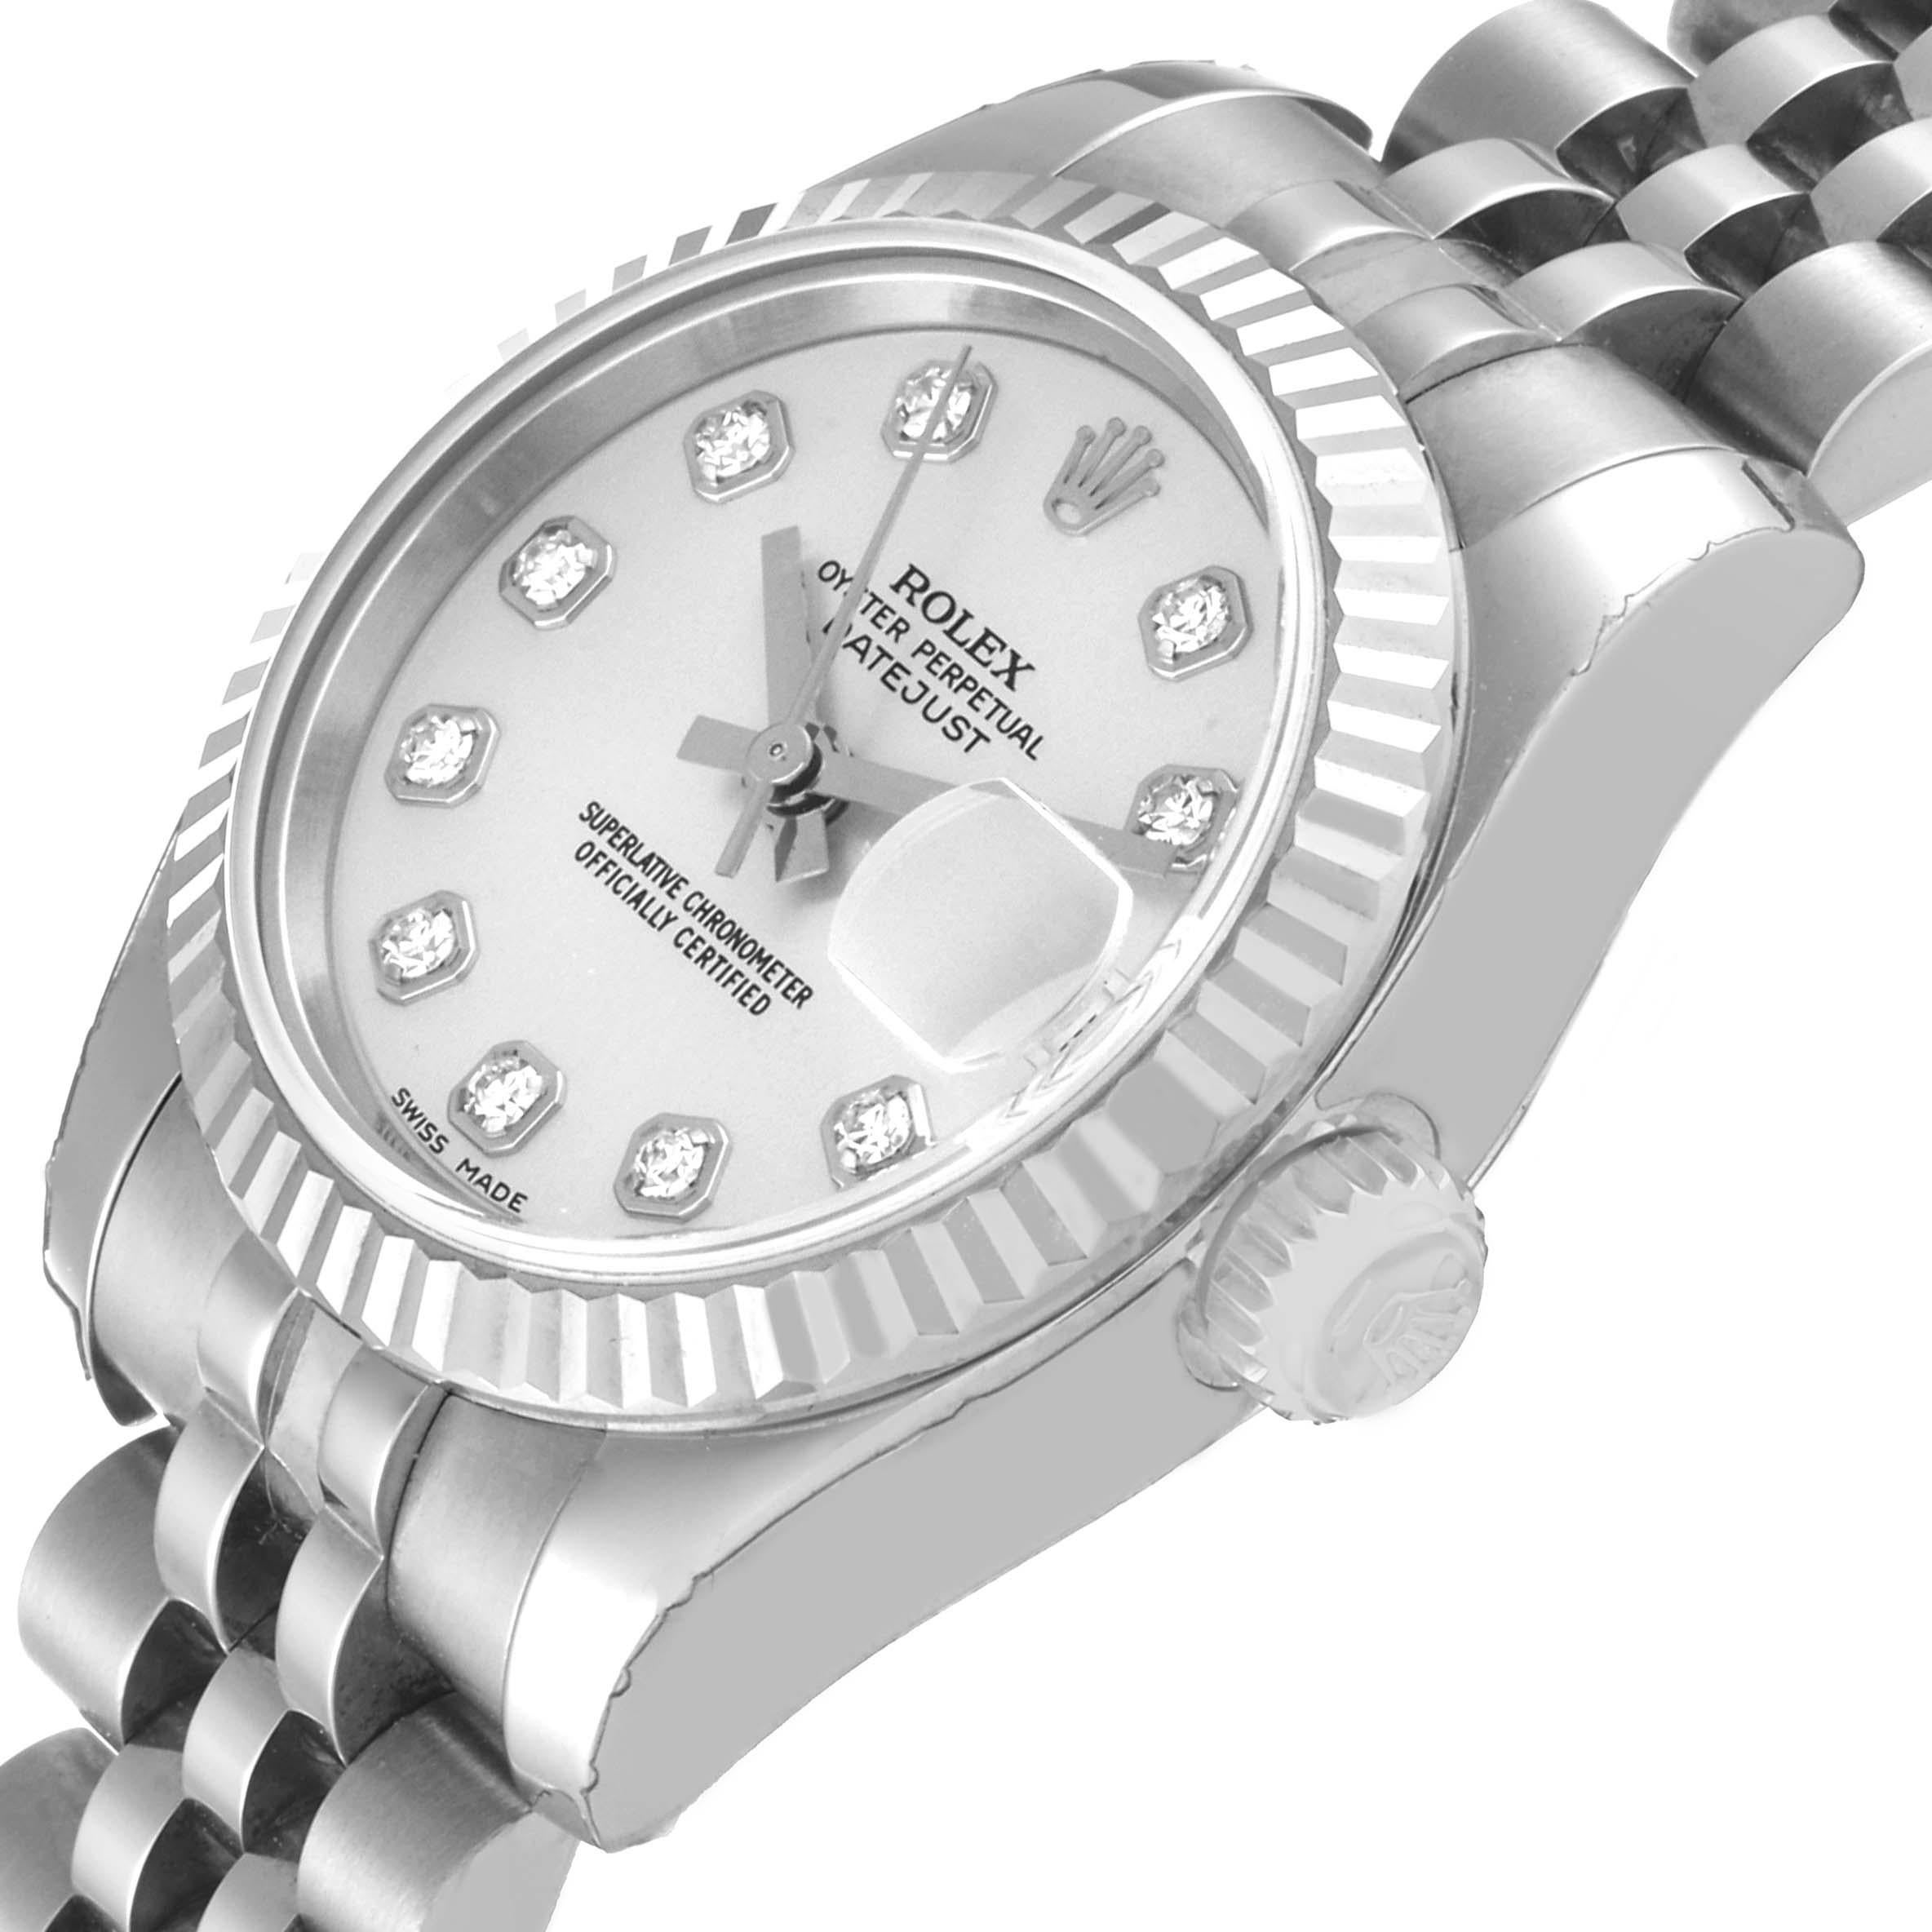 Rolex Datejust Steel White Gold Diamond Dial Ladies Watch 179174 Unworn NOS 1